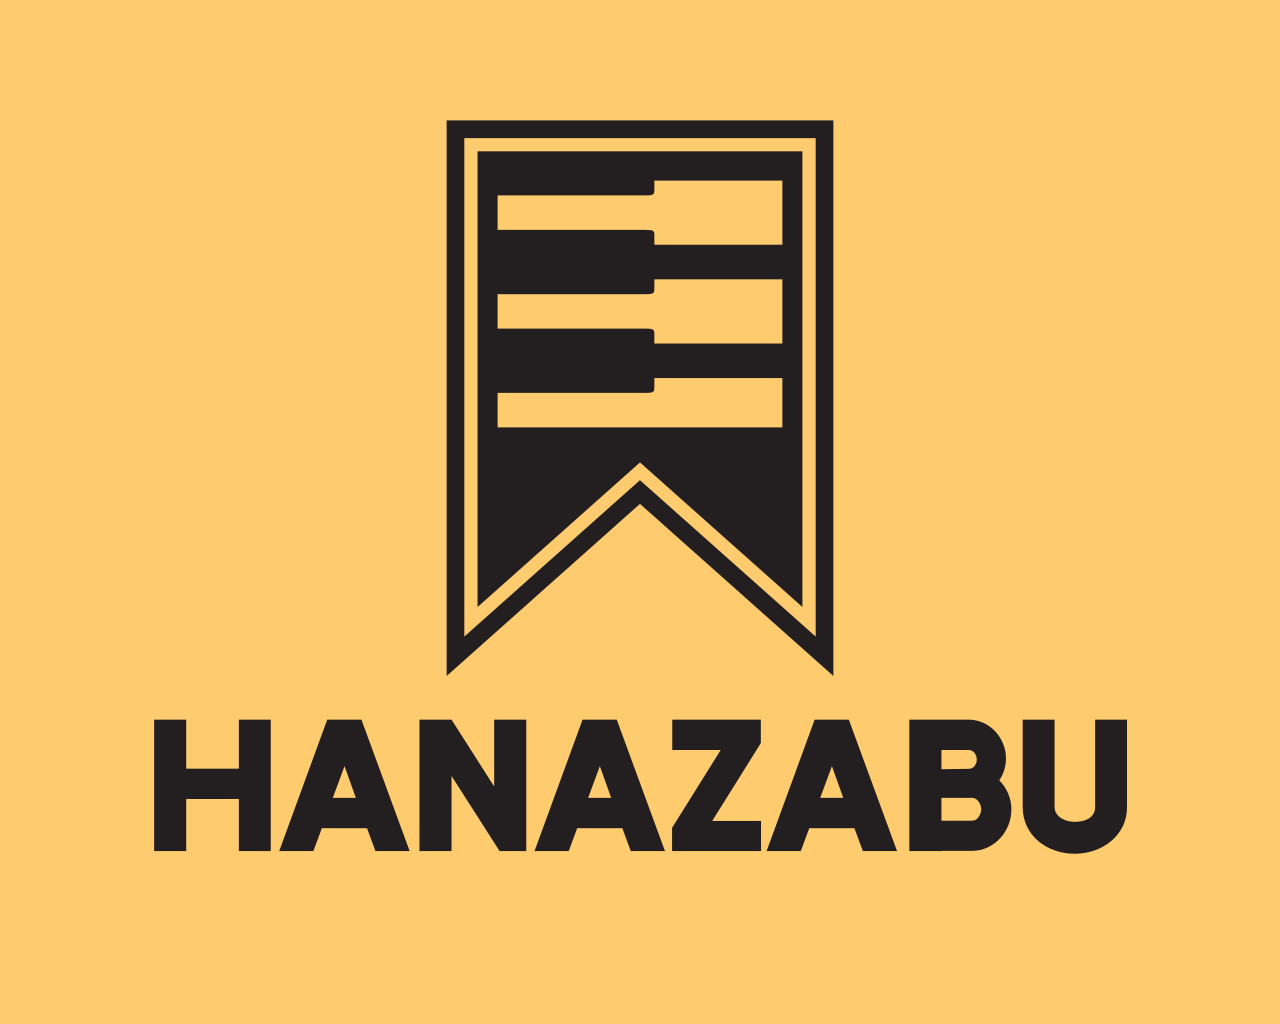 Hanazabu